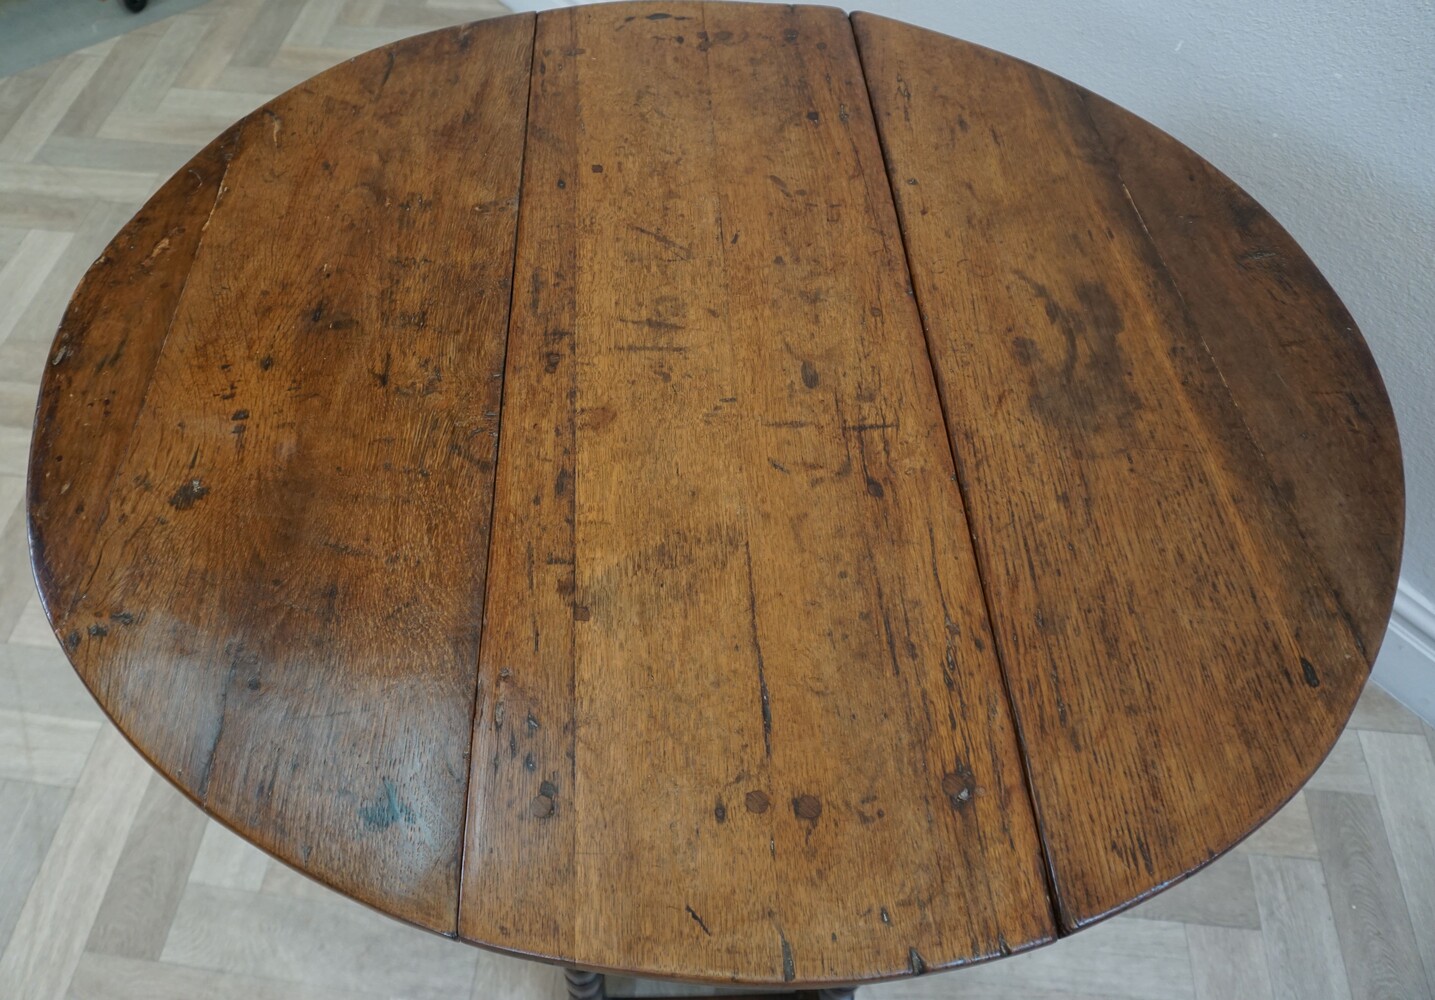 Oak gateleg table